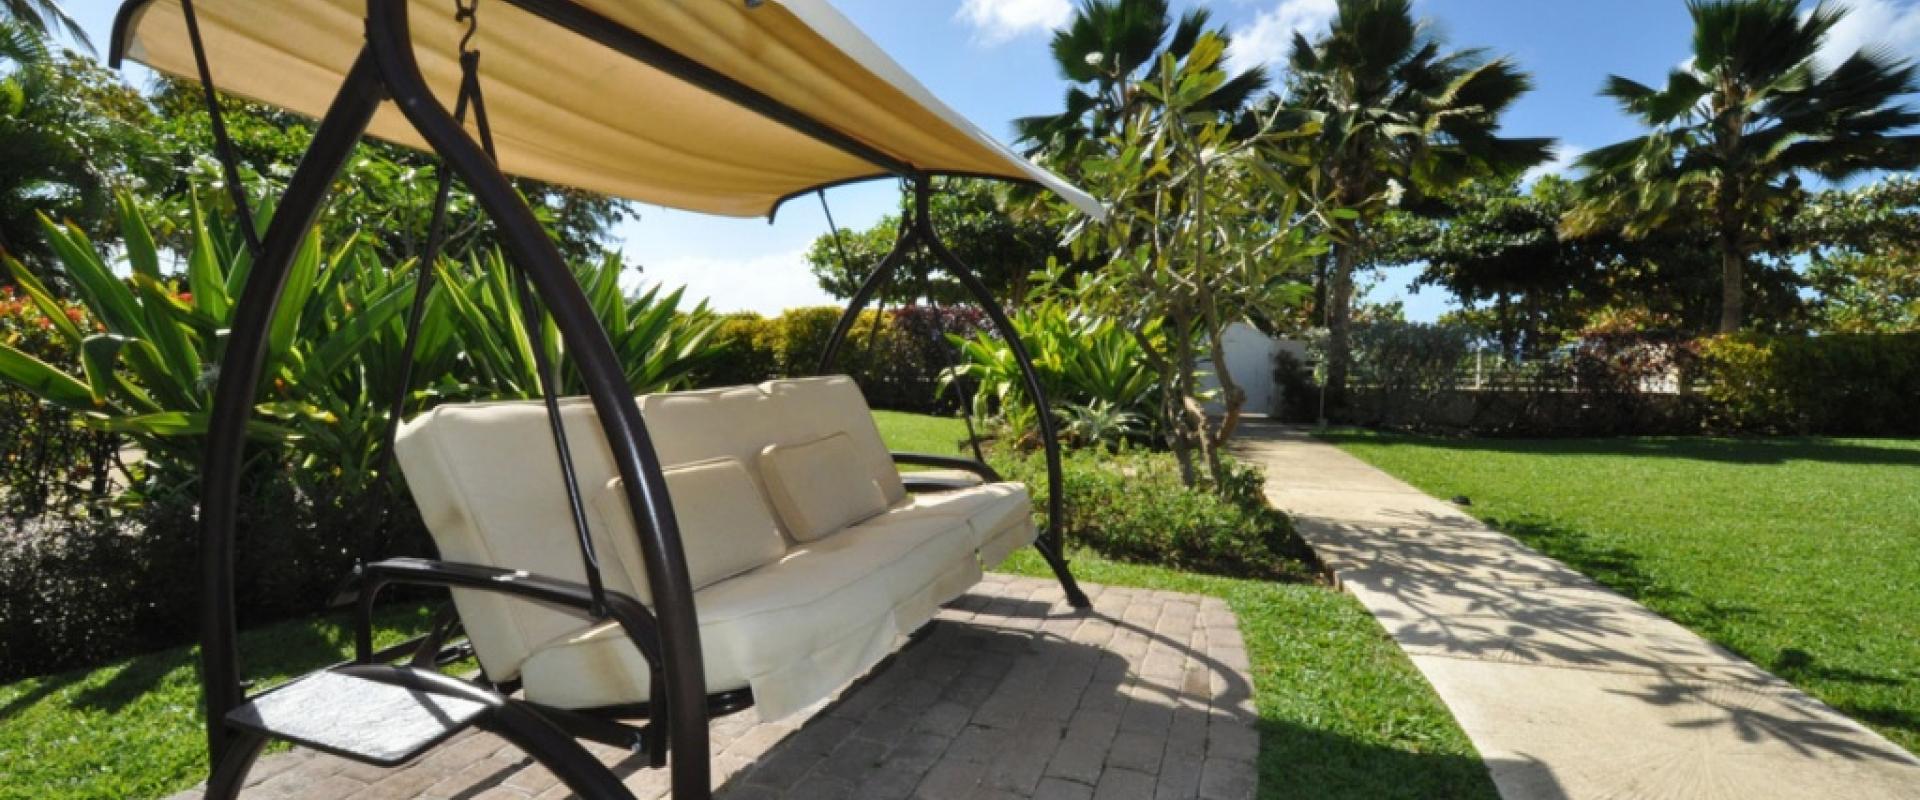 Palm Beach, Unit 206 Condominium/Apartment For Rent in Barbados